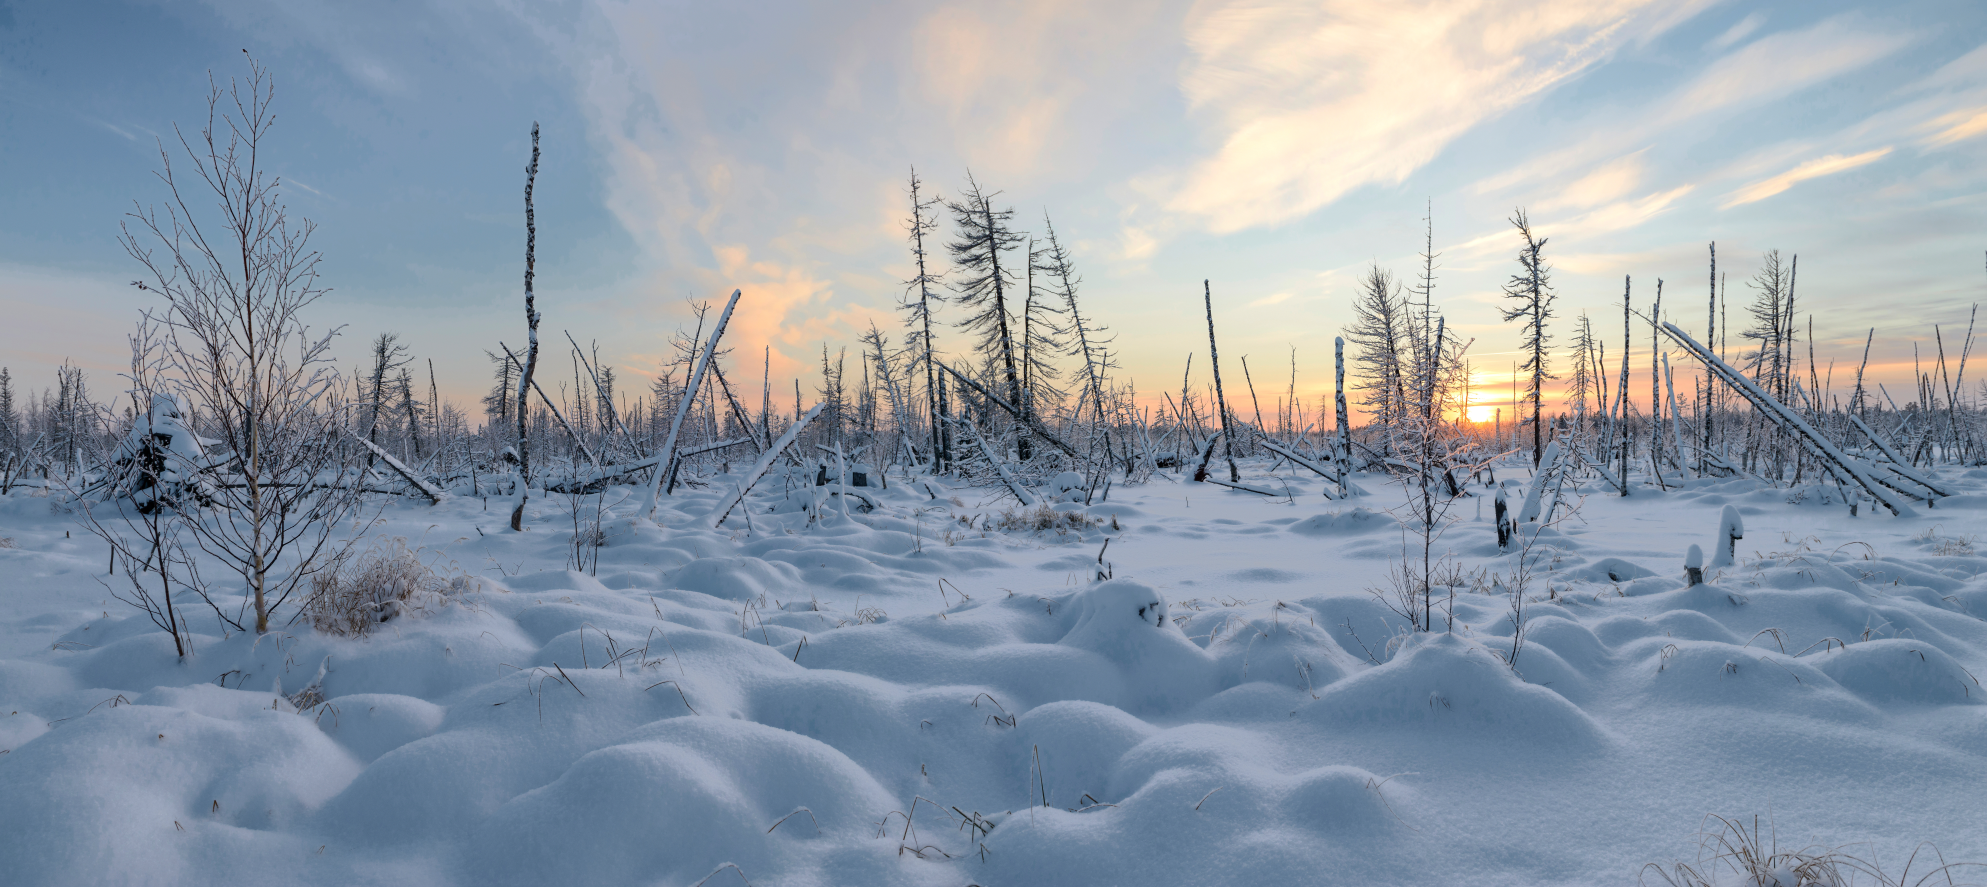 Les plaines de Sibérie étaient couvertes de neige durant les deux tiers de l'année à l'époque où les lions des cavernes occupaient ce territoire. © vladi_mir, Adobe Stock